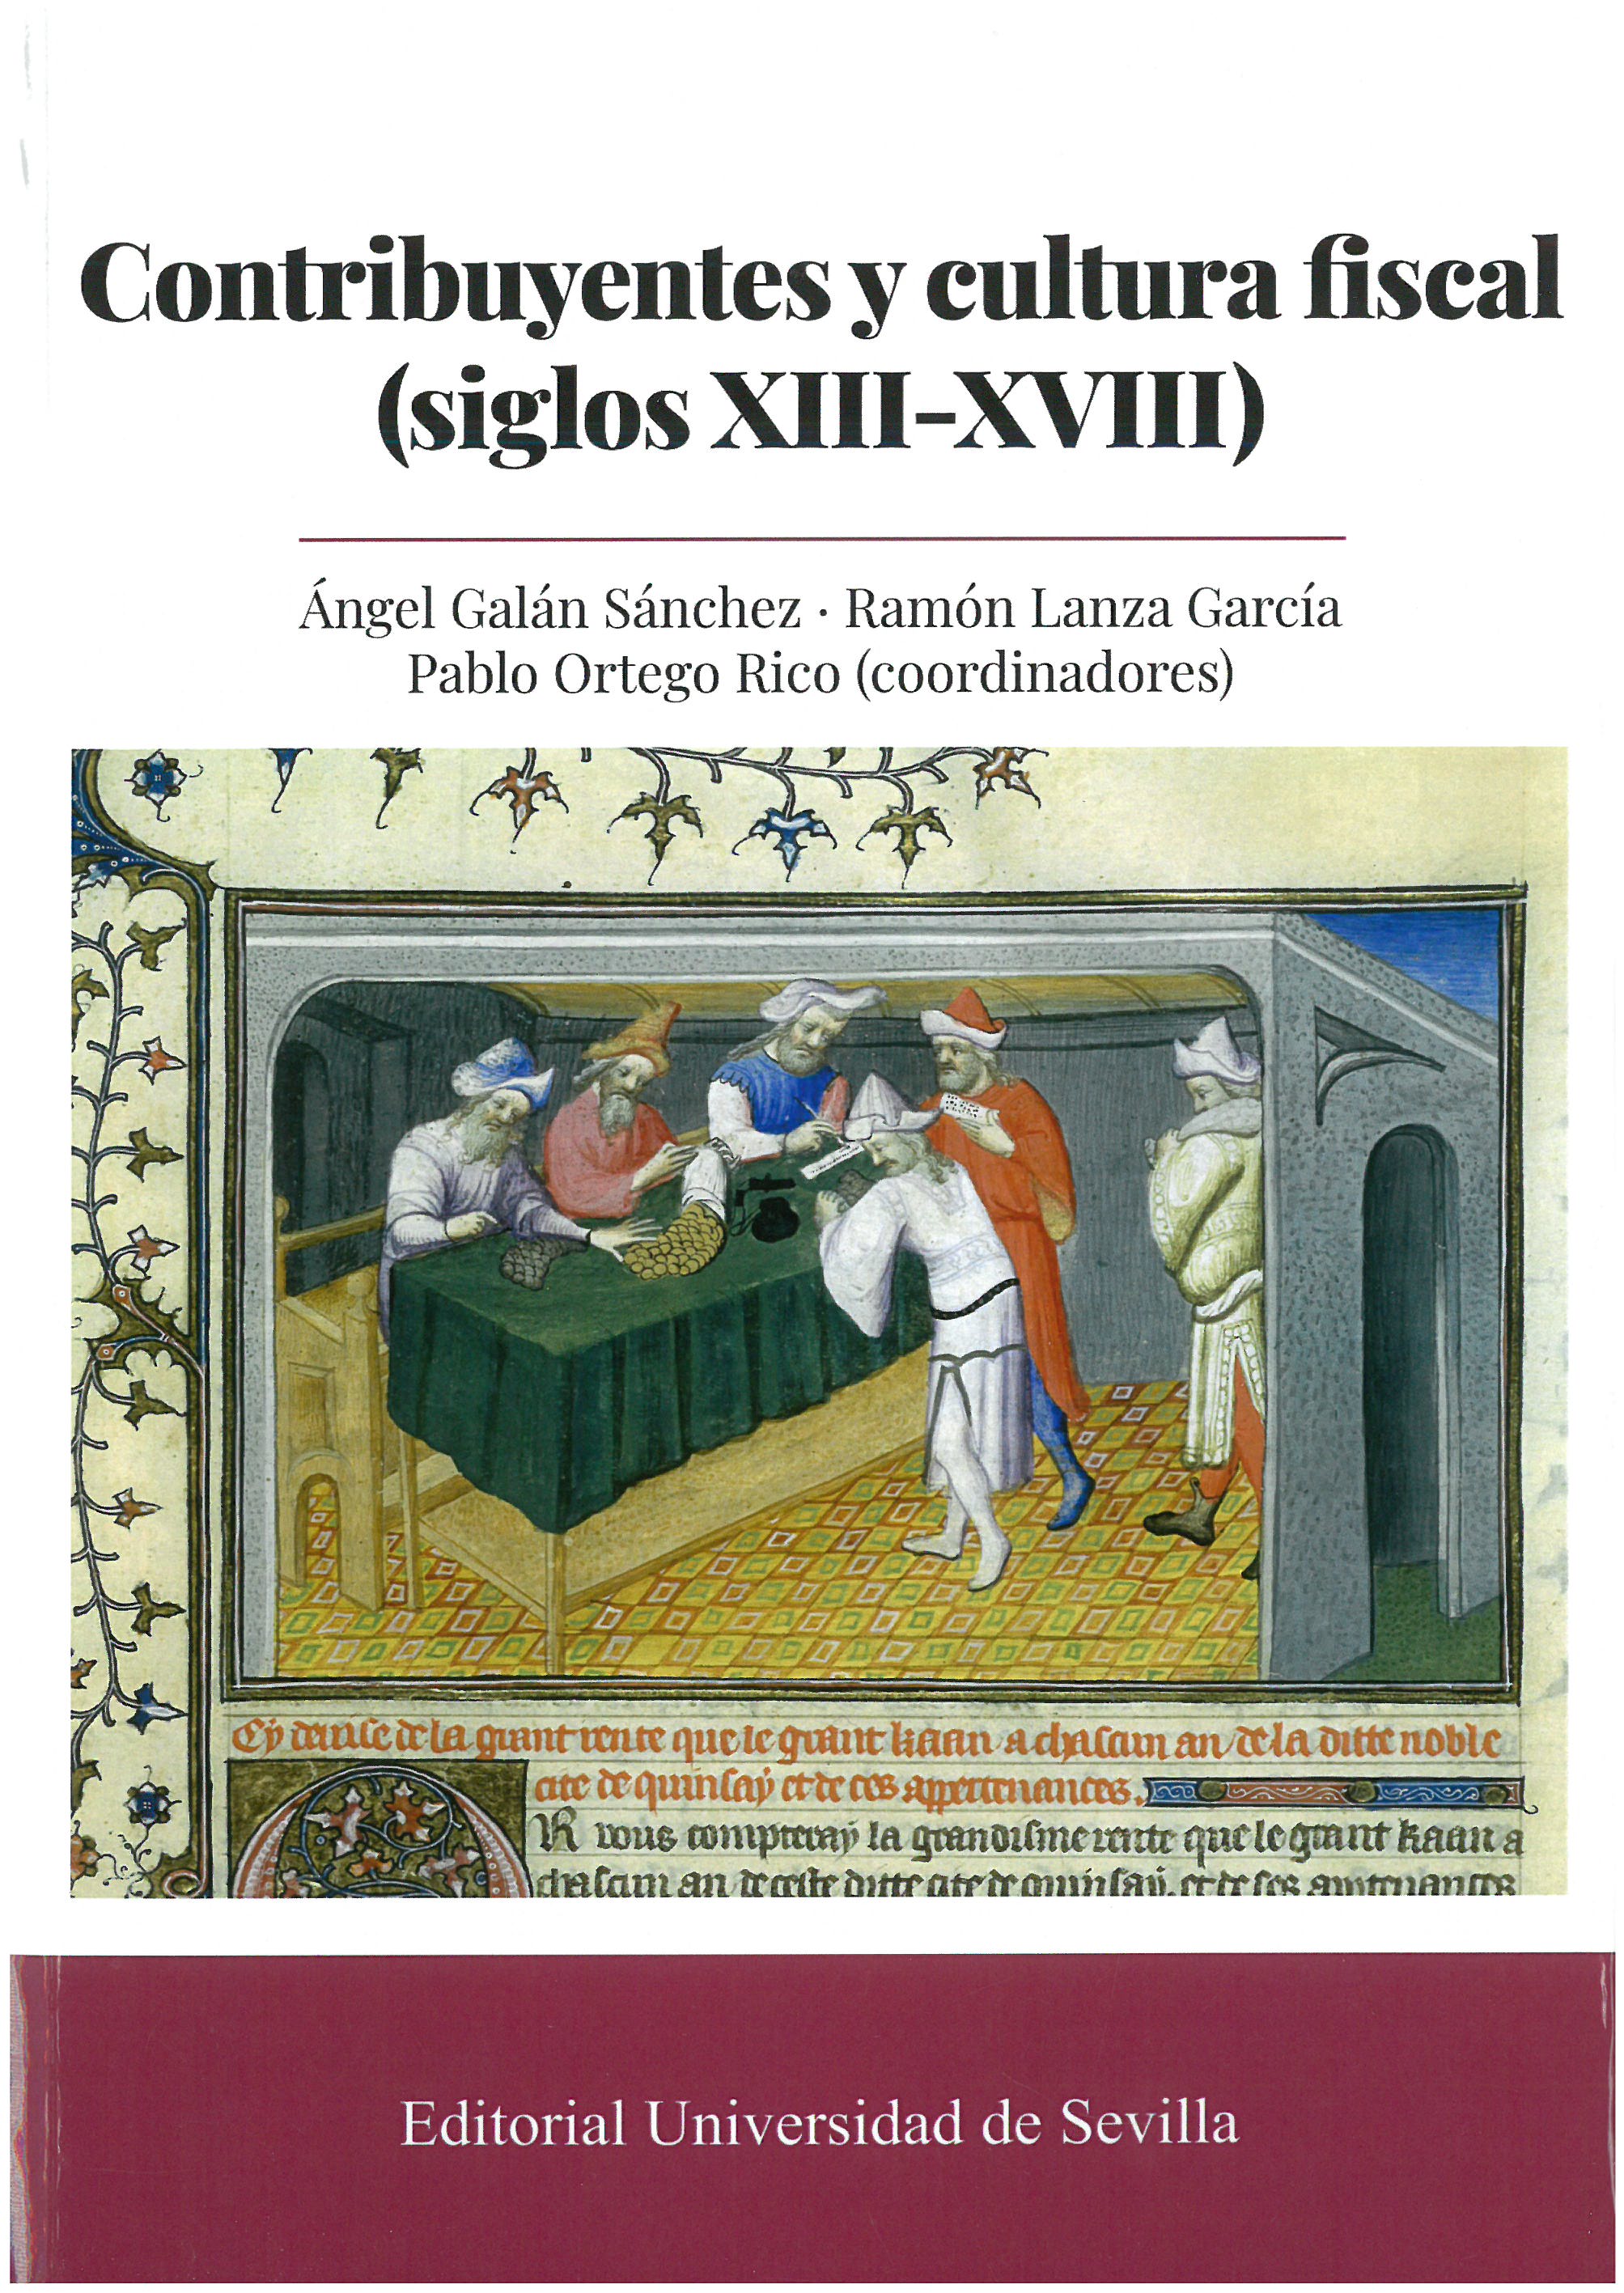 Imagen de portada del libro Contribuyentes y cultura fiscal (siglos XIII-XVIII)